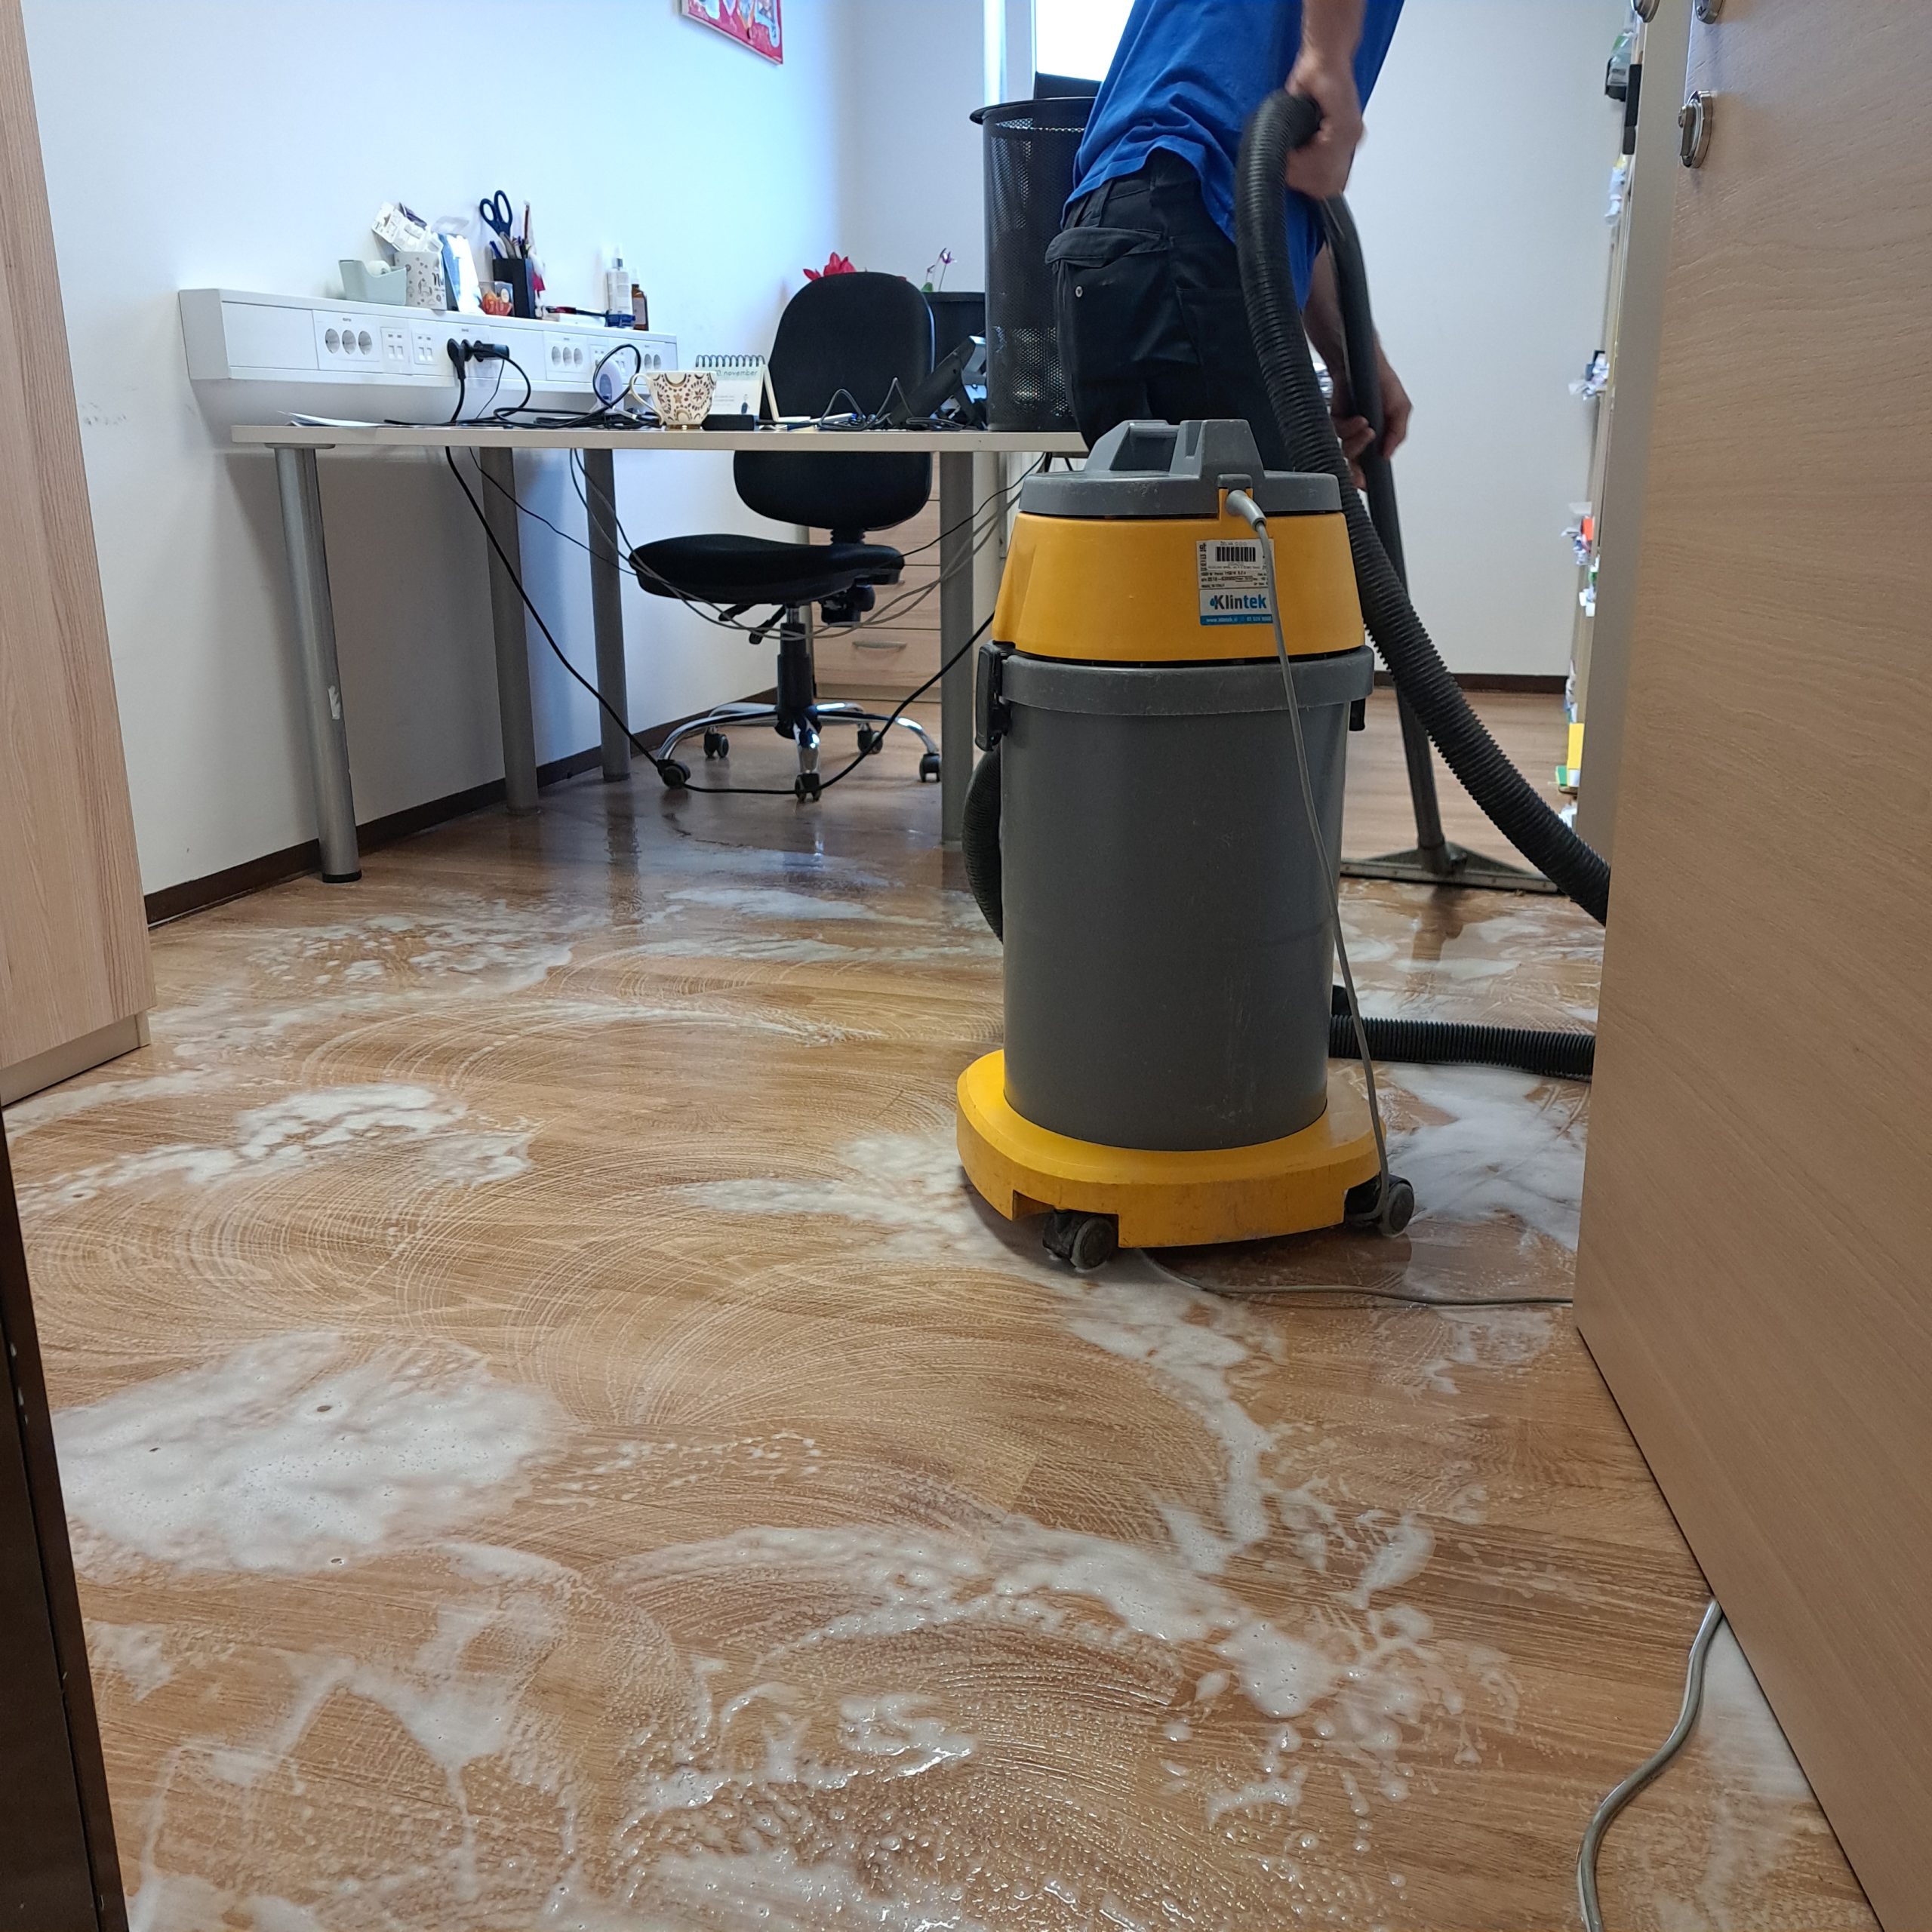 Prikaz mokrega čiščenja tal ene od pisarn, ki jo izvaja delavec oddelka Čistilni servis